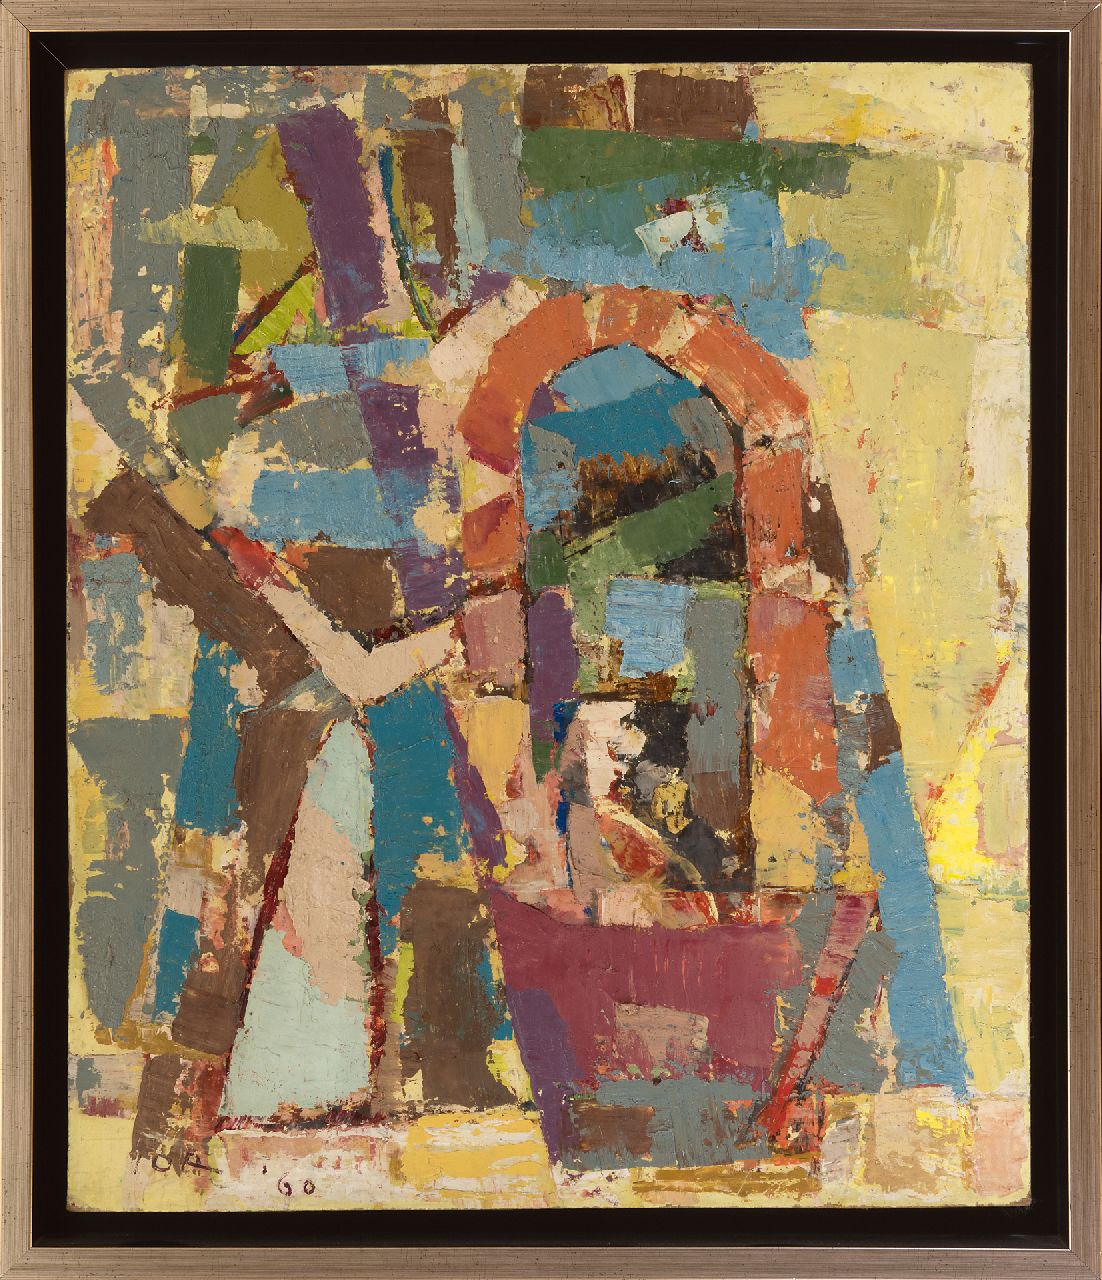 Jordens J.G.  | 'Jan' Gerrit Jordens, Compositie, olieverf op board 59,0 x 50,0 cm, gesigneerd linksonder en gedateerd '60